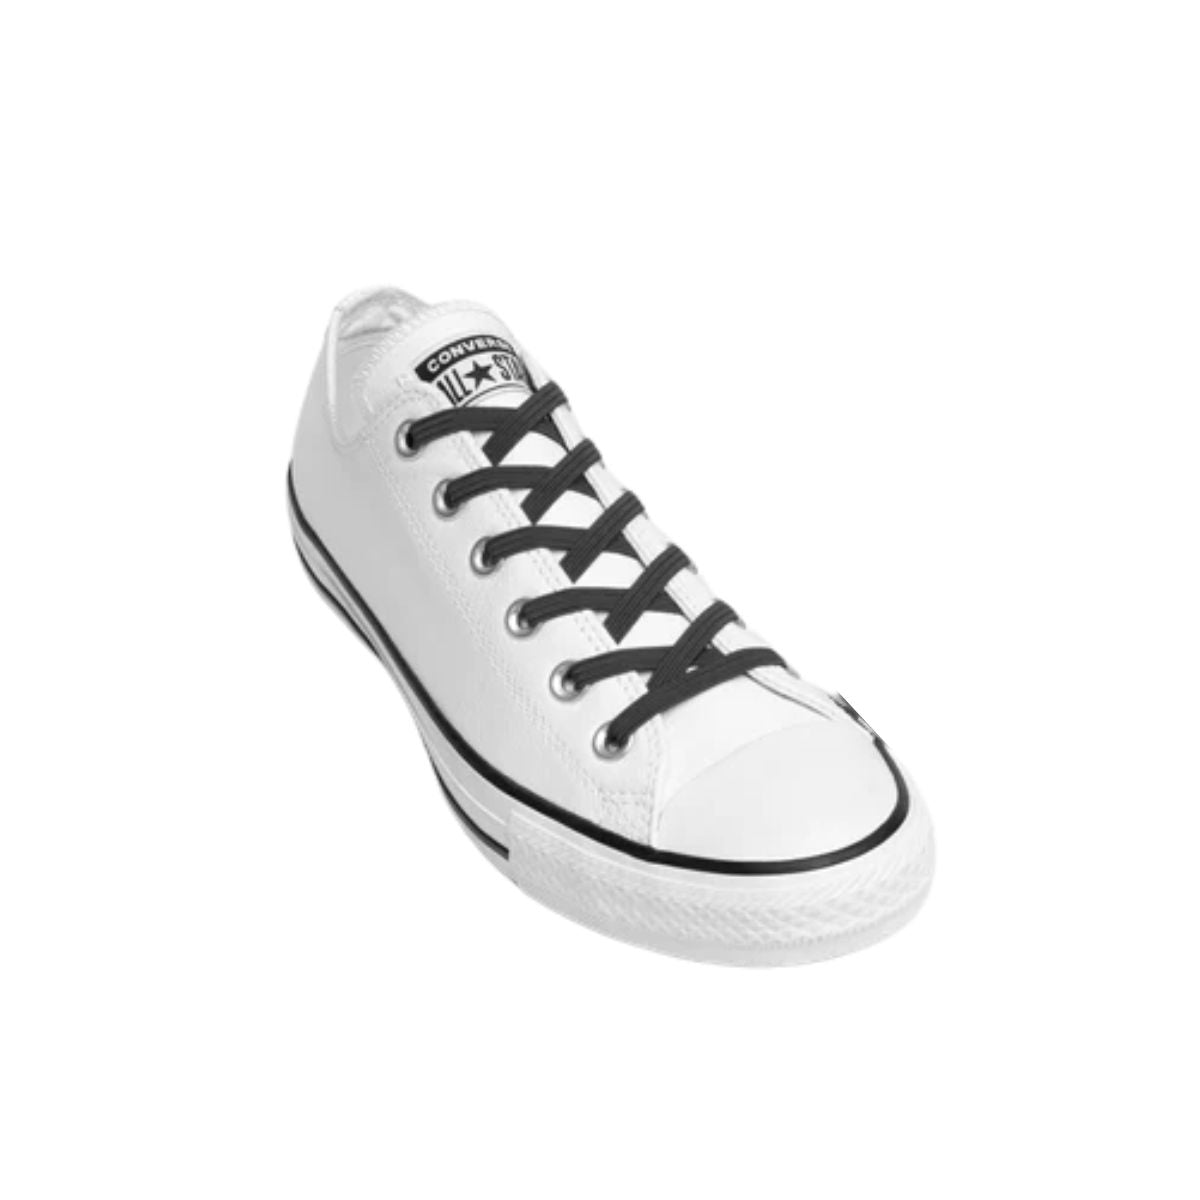 Replacement for Shoe Laces Black No-Tie Shoelaces - Kicks Shoelaces